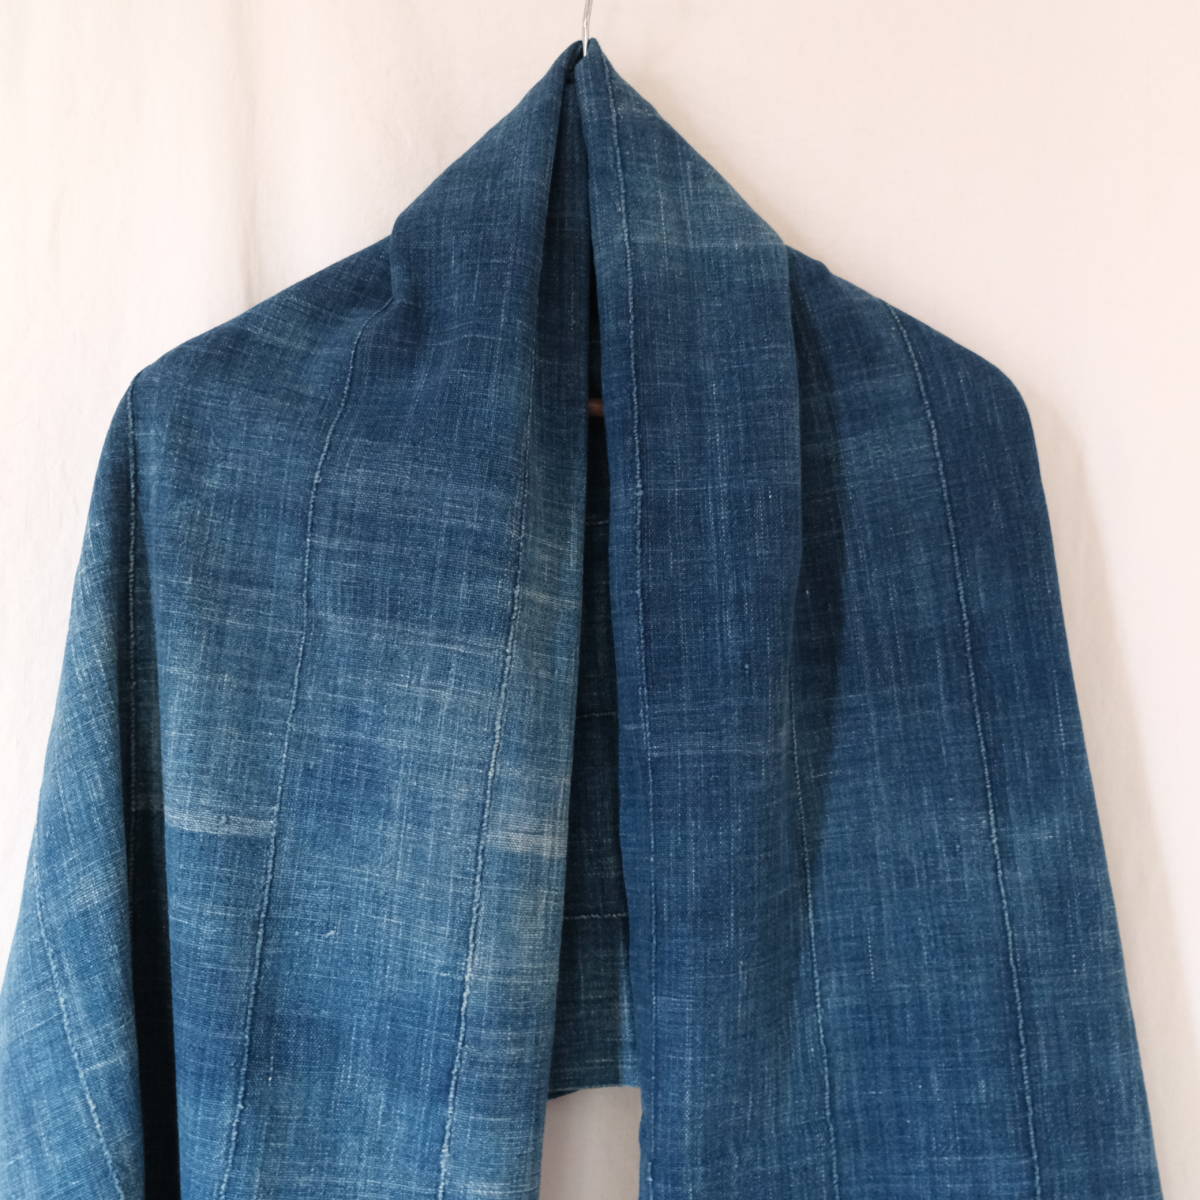  Africa [ indigo fabric ] Indigo dyeing cotton cloth brukinafaso/ indigo stole / old cloth Vintage large size vintage